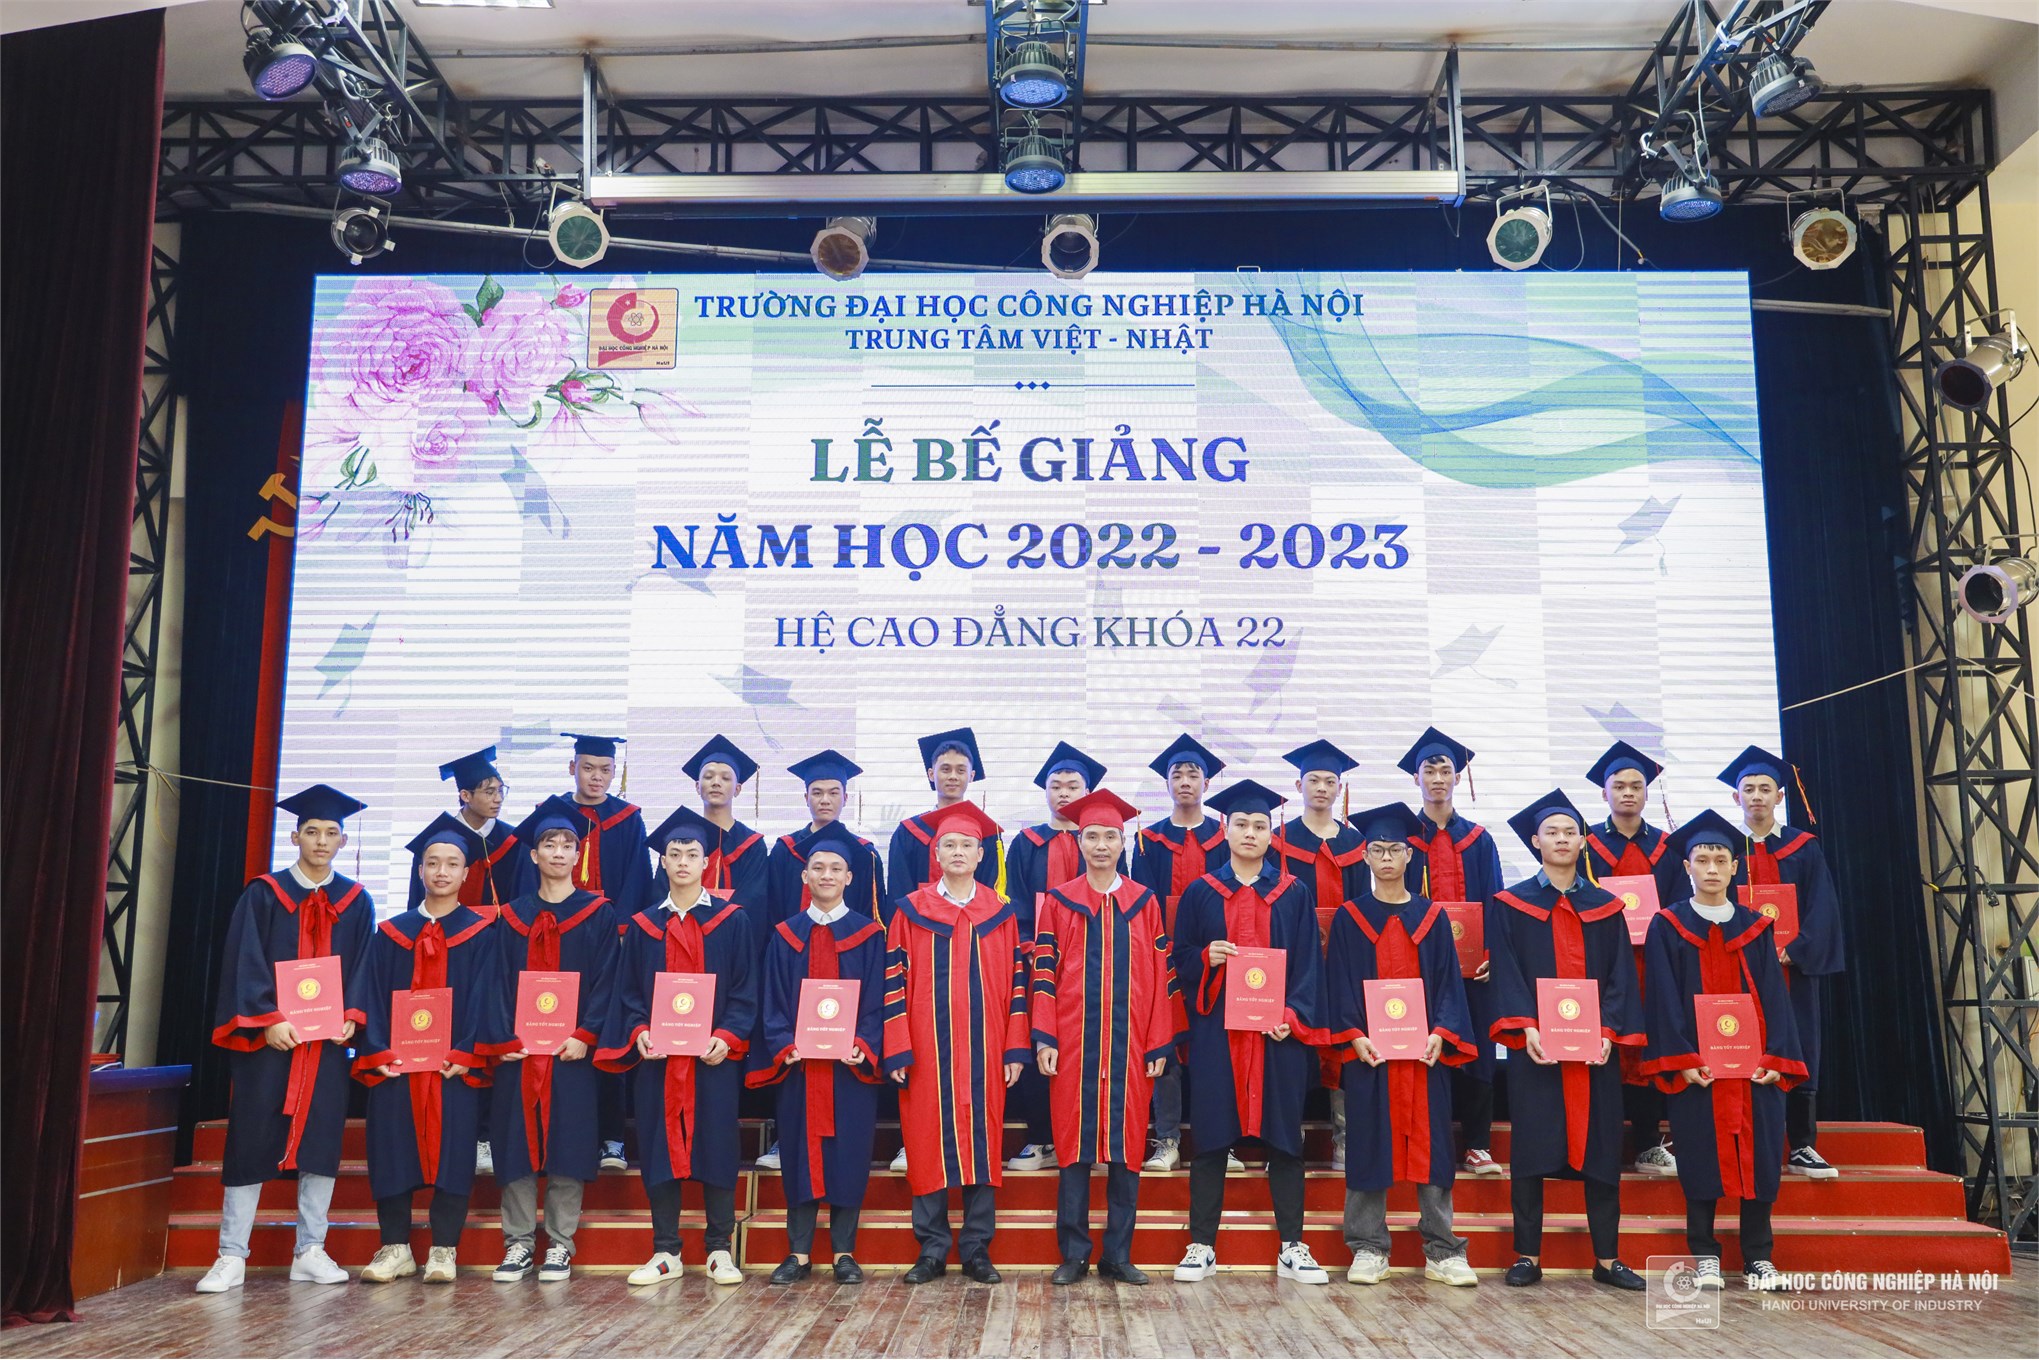 Dư âm ngọt ngào tại lễ tốt nghiệp của hơn 460 sinh viên hệ cao đẳng K22 trung tâm Việt - Nhật